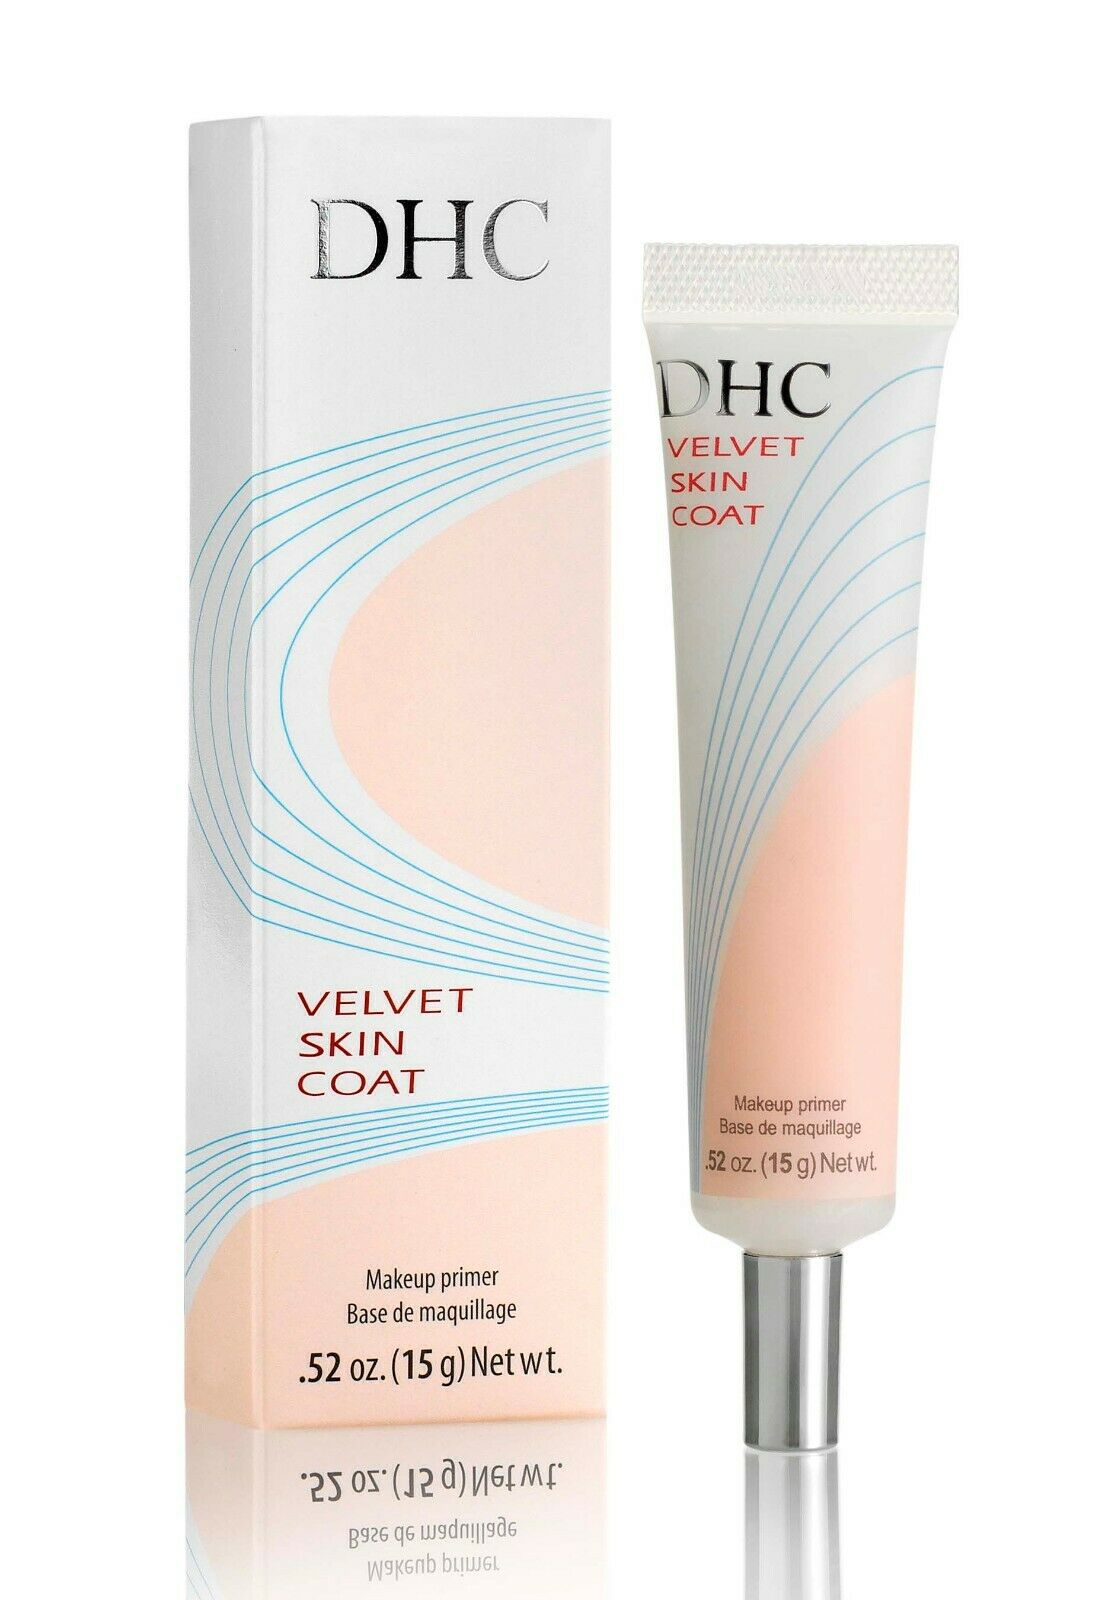 Dhc Velvet Skin Coat  0.52 Oz./15g, 4 Free Samples Included